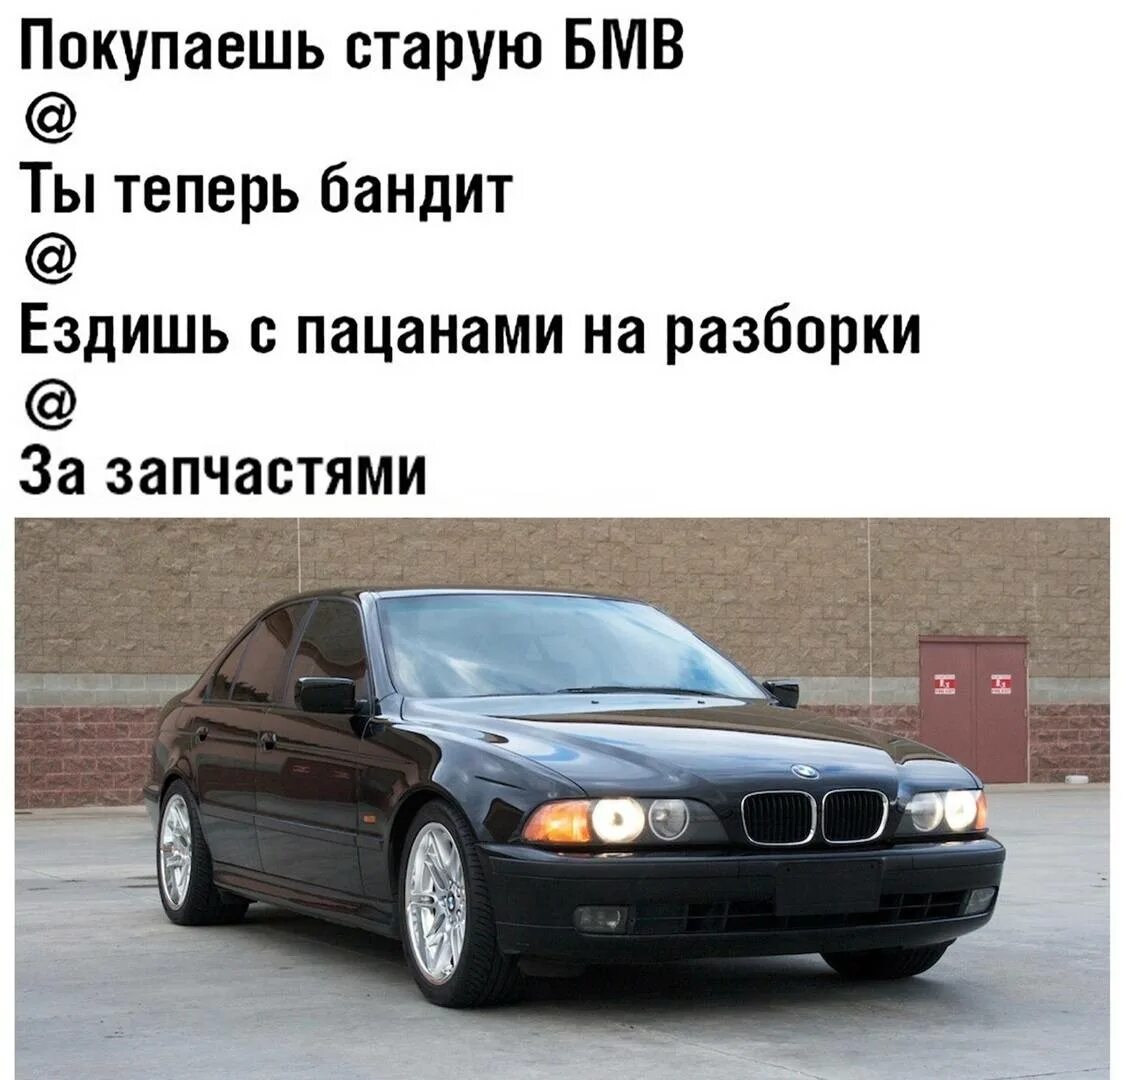 Правда ли что меньше. BMW приколы. Приколы про БМВ. Мемы про БМВ. Шутки про БМВ.